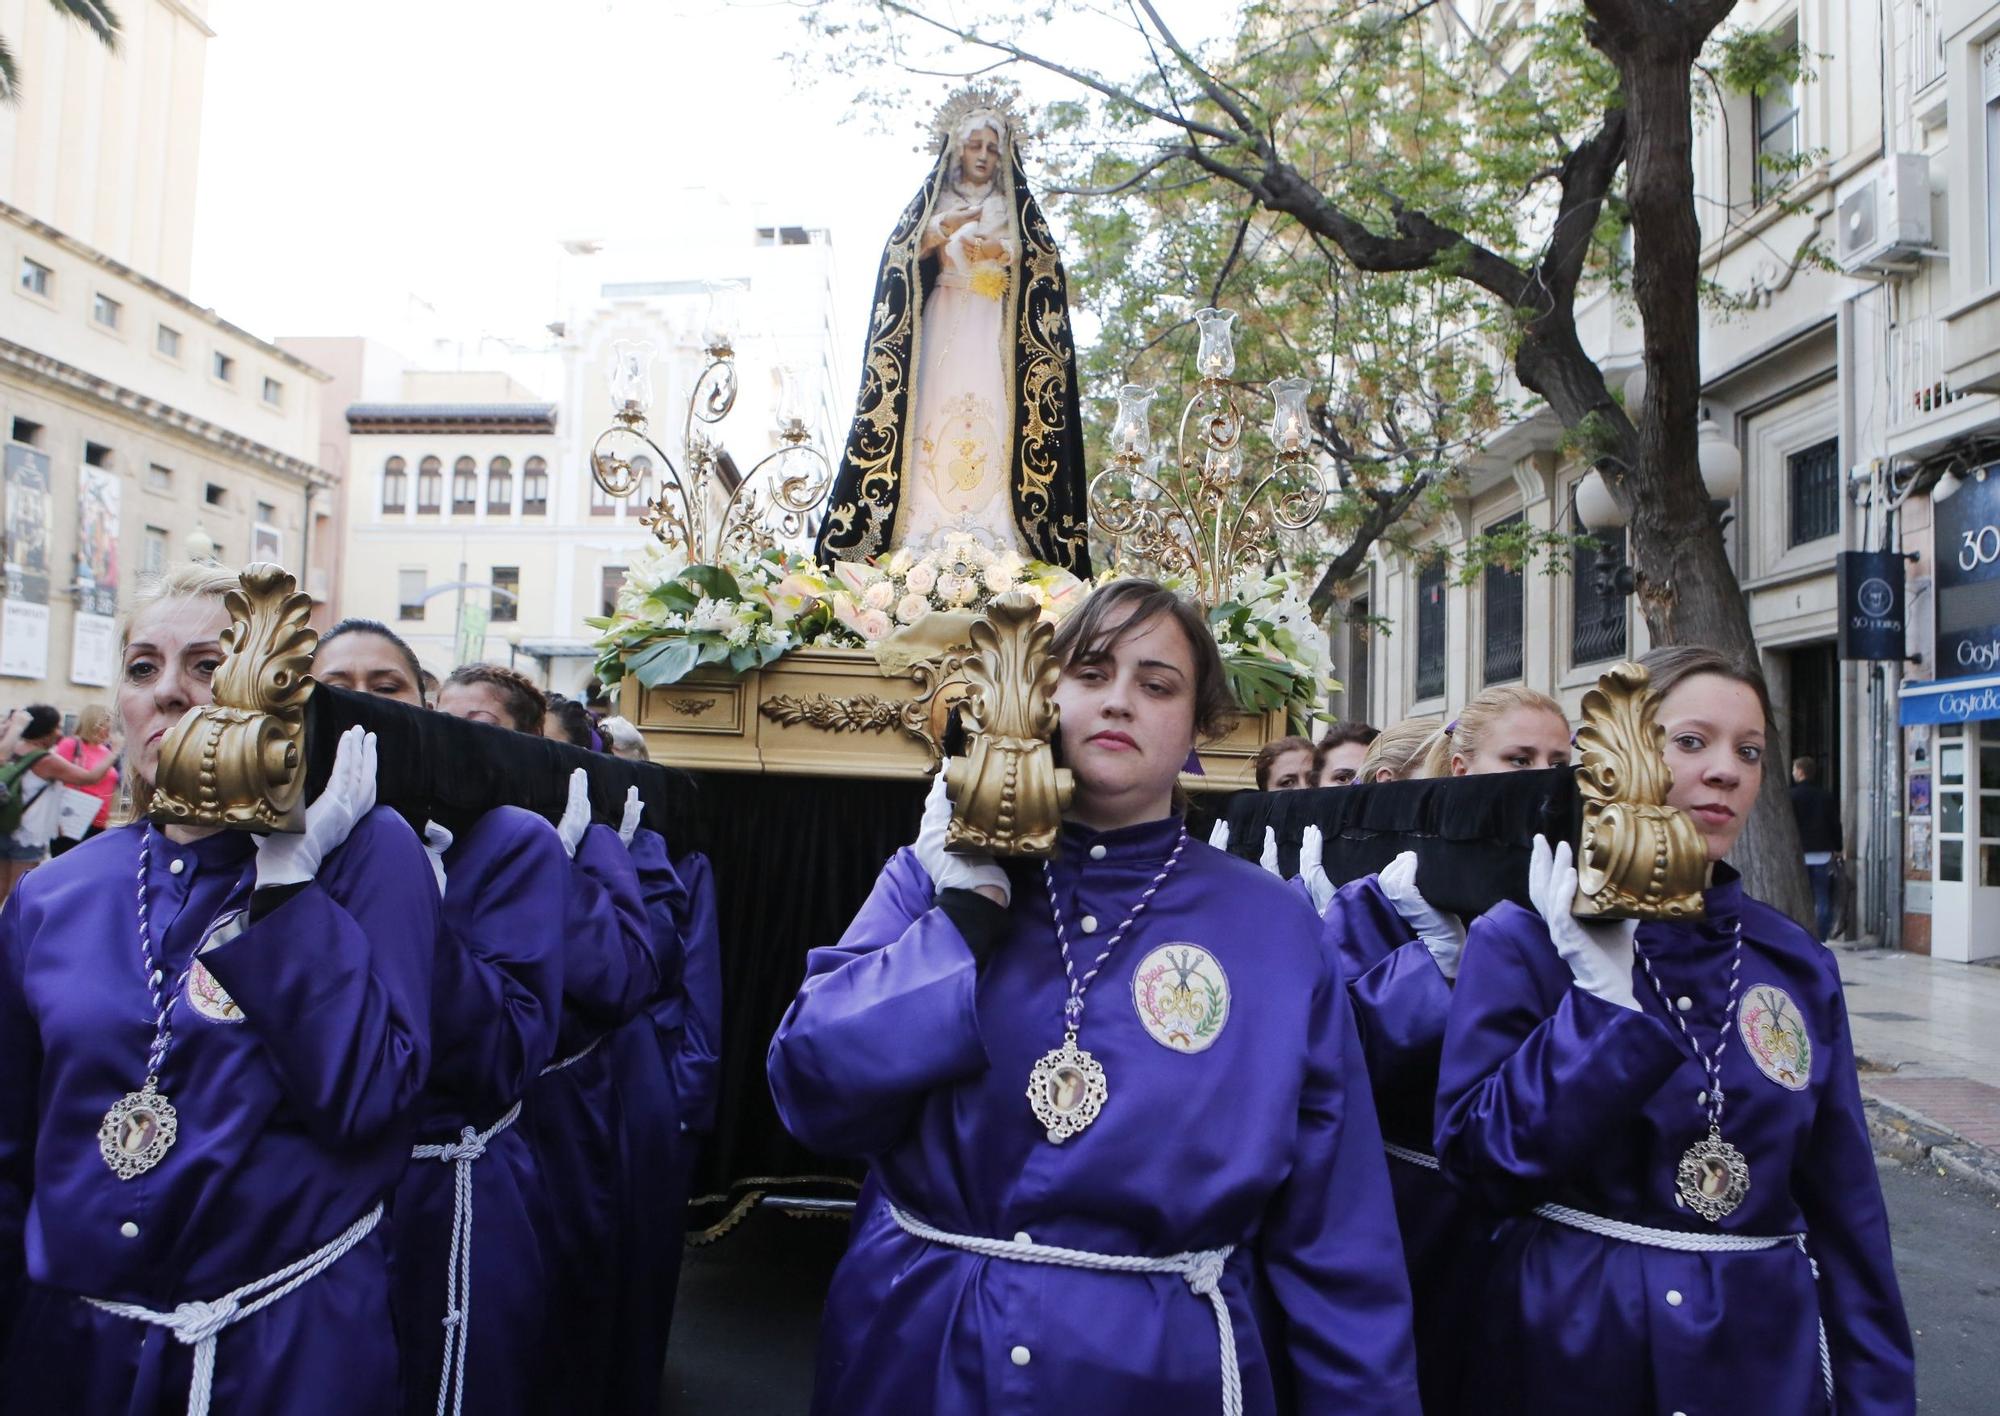 La Virgen, talla anónima, por las calles del centro de Alicante